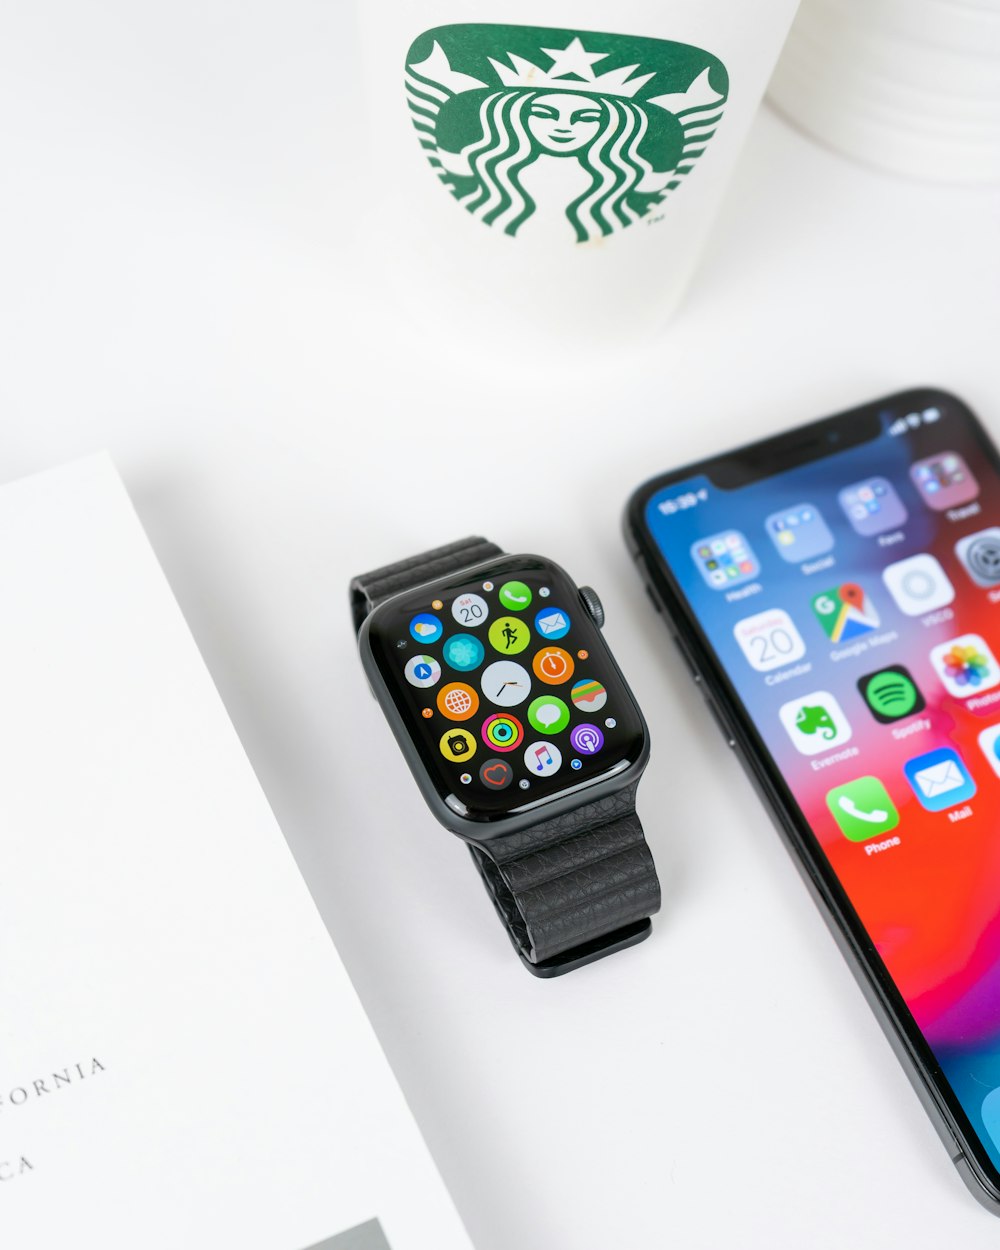 블랙 알루미늄 케이스 스페이스 그레이 iPhone X가 켜진 옆에 블랙 스포츠 밴드가 있는 Apple Watch